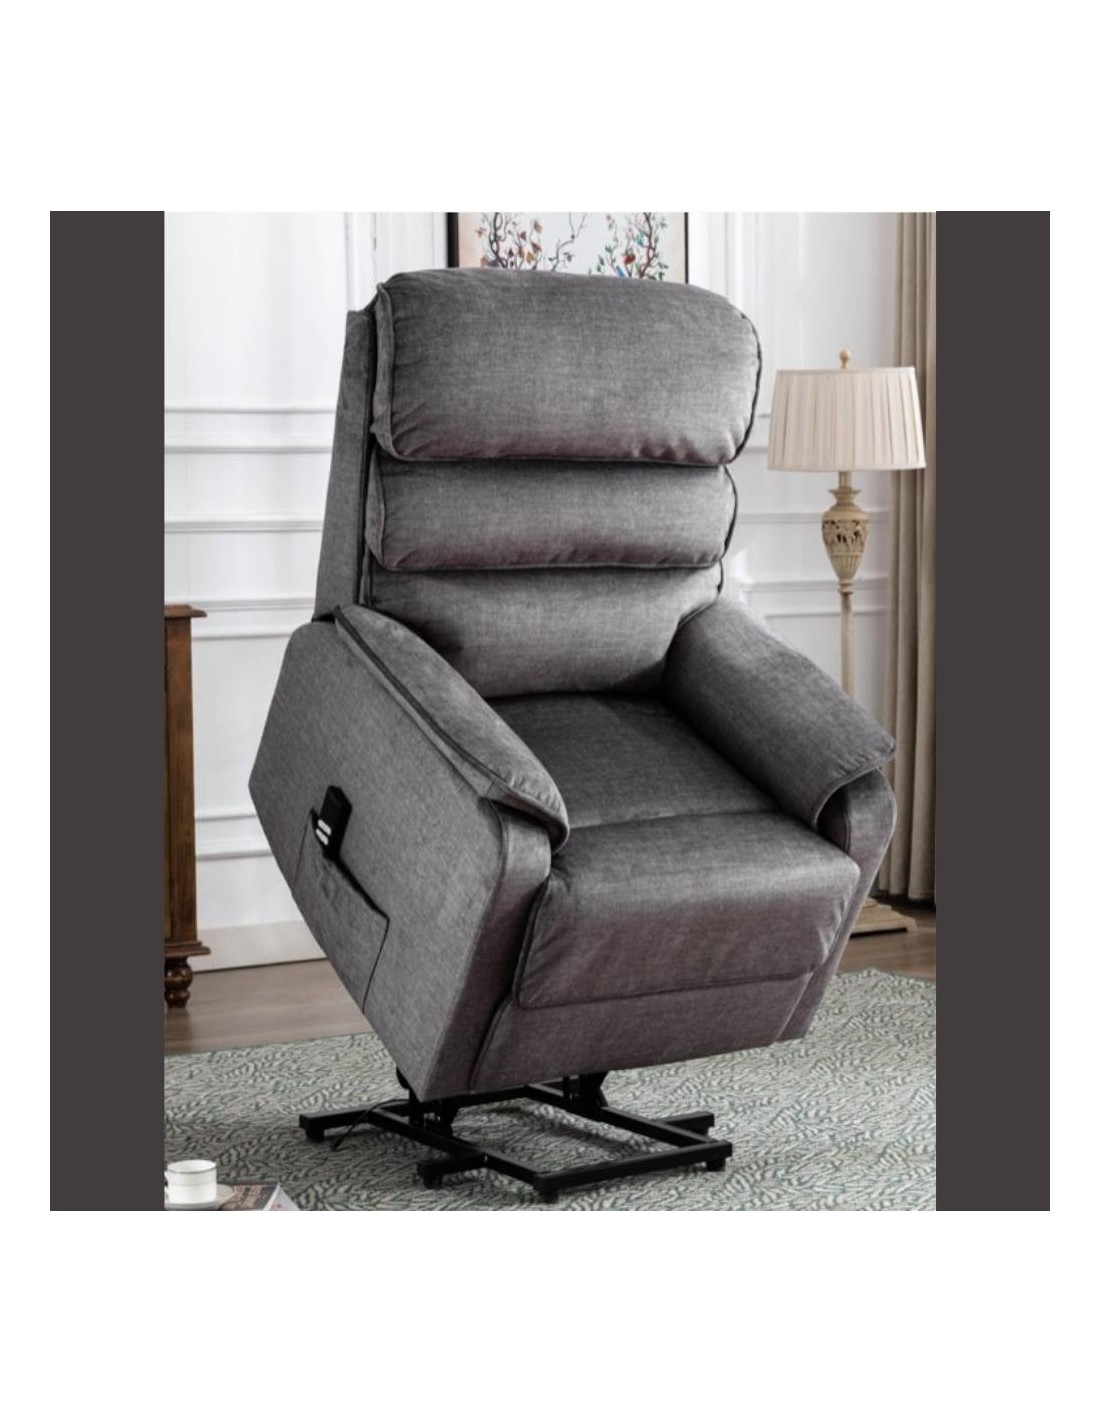 Riser Recliner Chairs, Lift & Tilt Armchairs